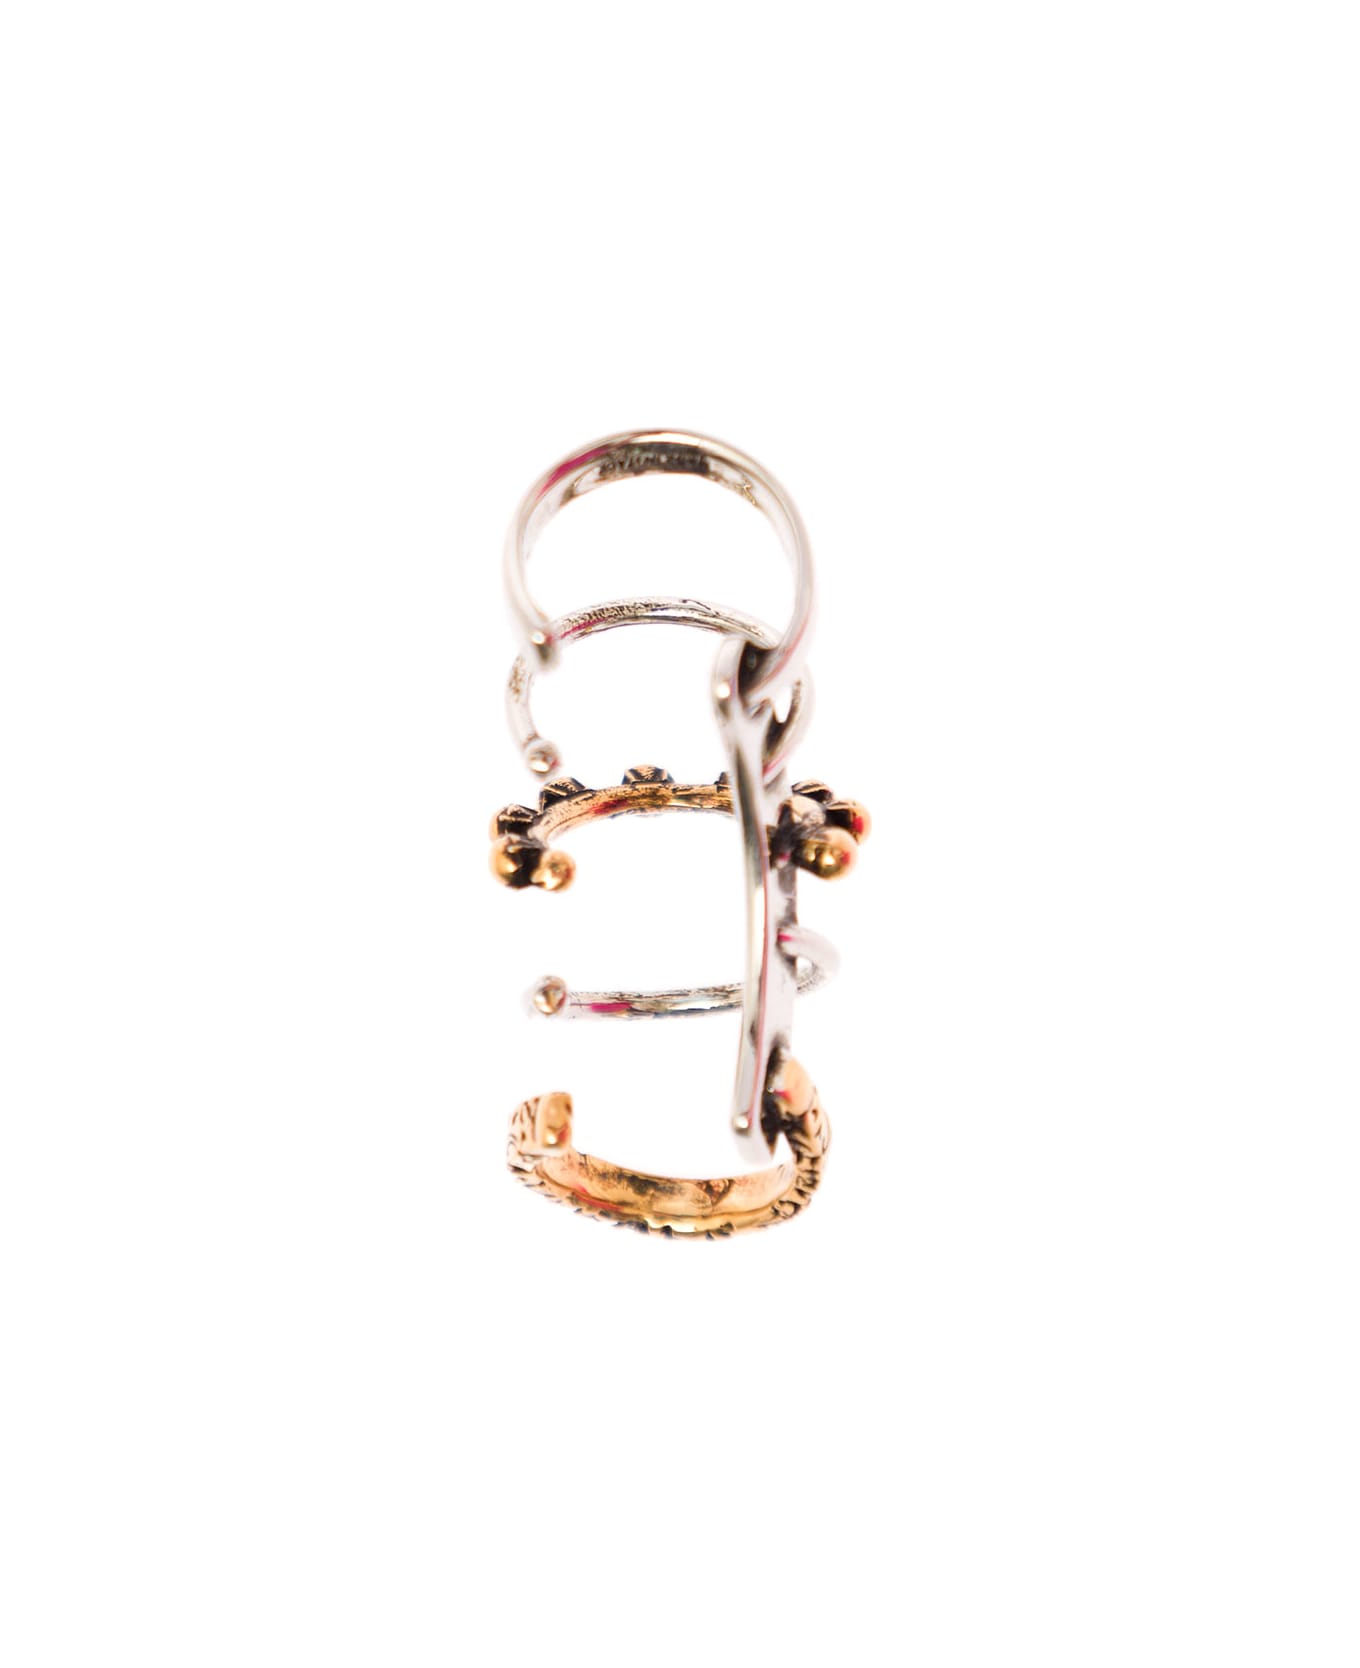 Alexander McQueen Woman's Punk Brass Ear Cuff Earing - Metallic